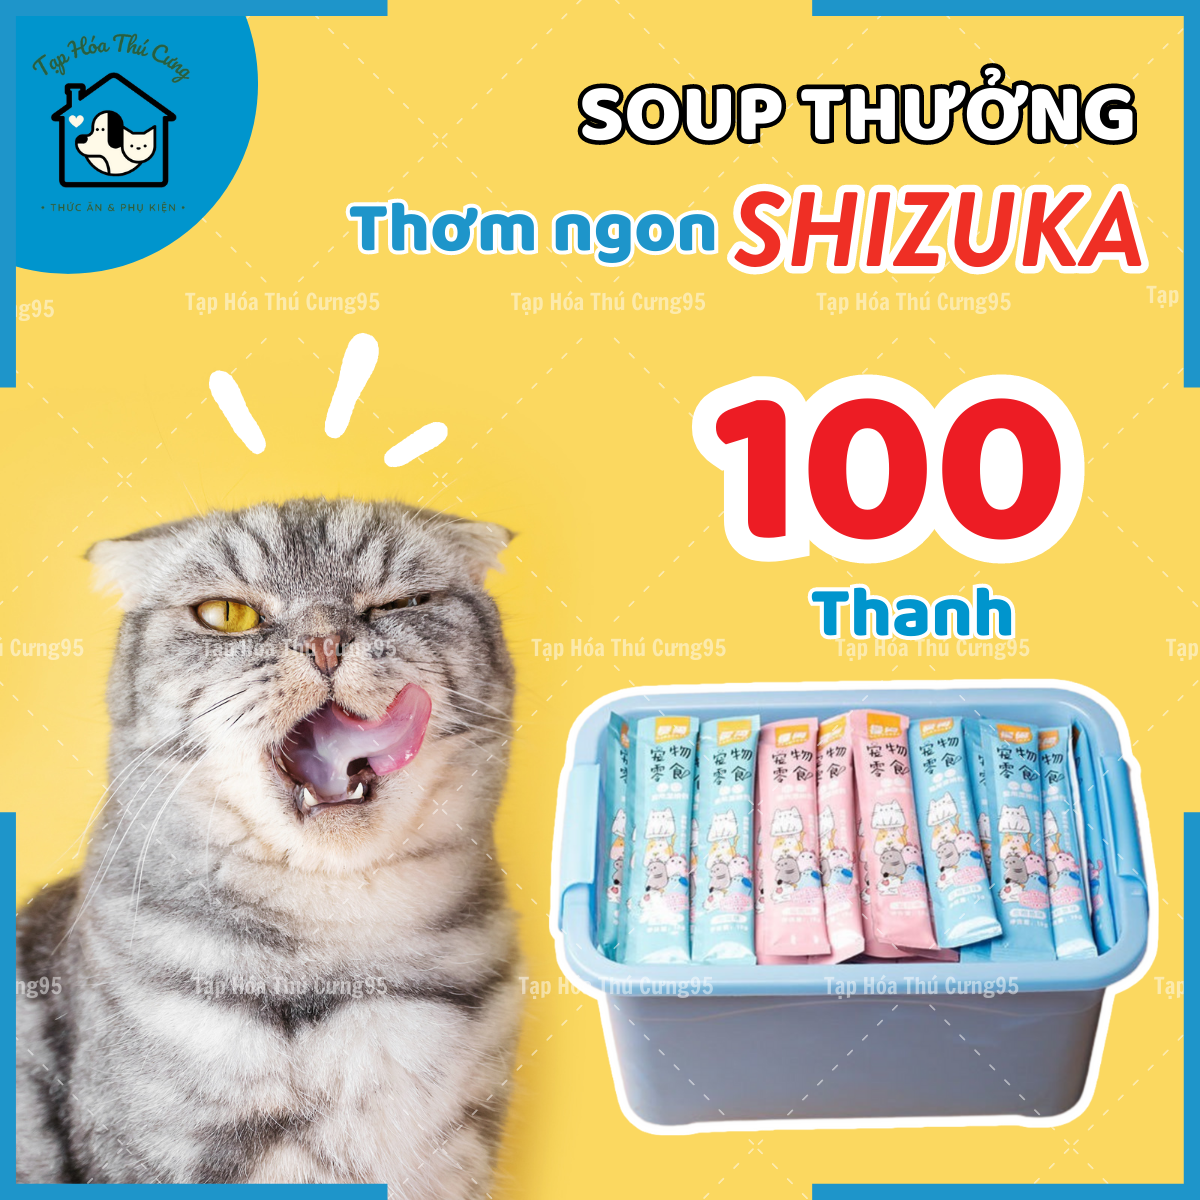 COMBO 100 thanh súp thưởng Shizuka cho mèo 15gr đầy đủ mùi vị